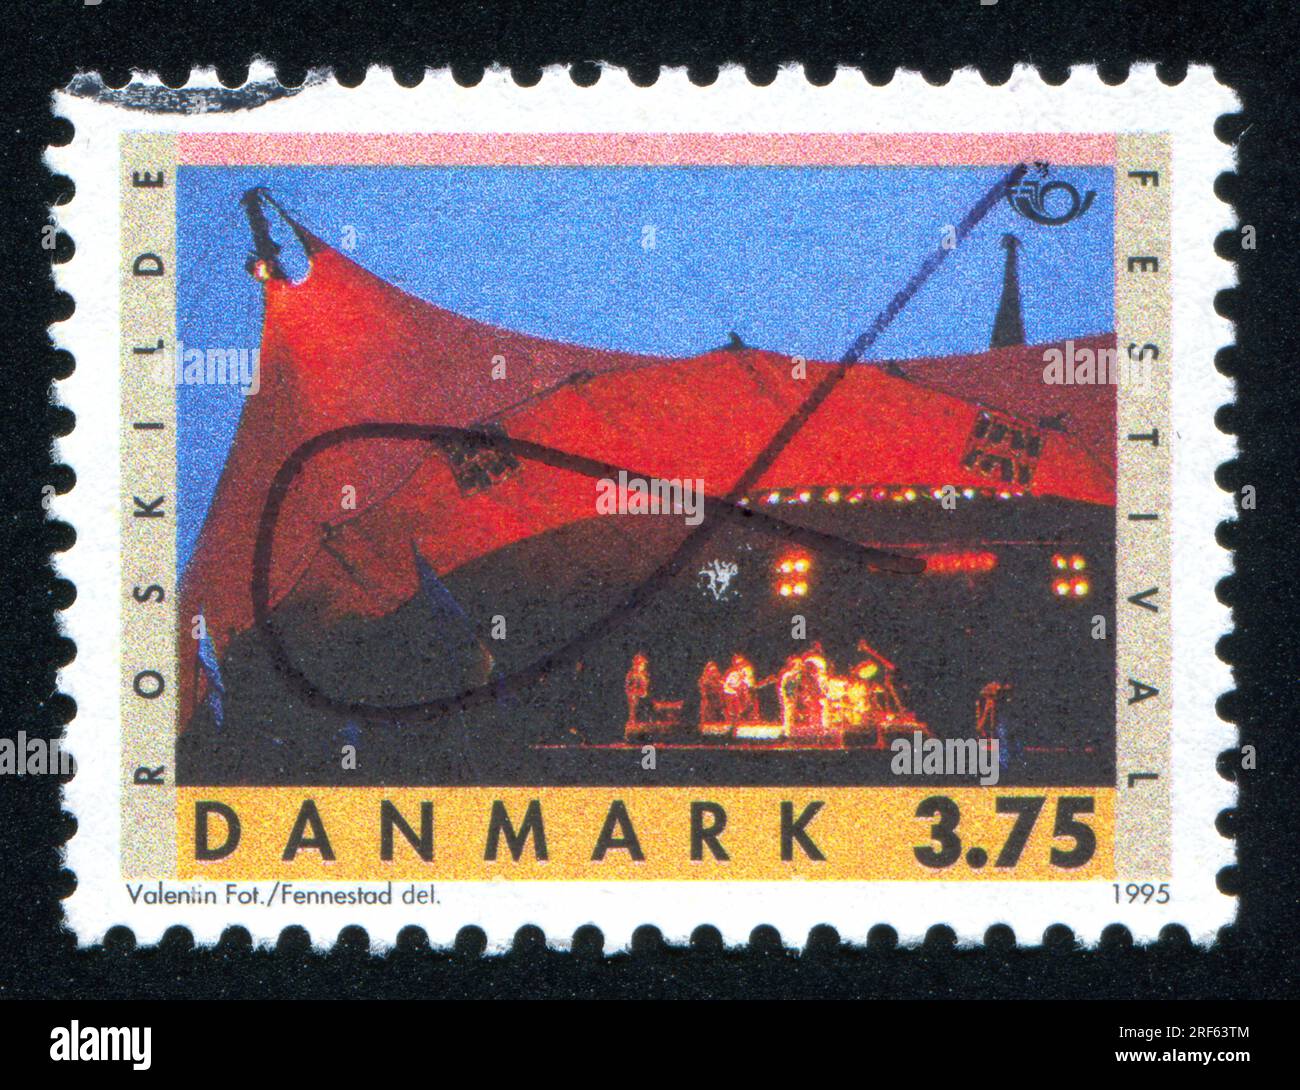 RUSSIE KALININGRAD, 22 DÉCEMBRE 2013 : timbre imprimé par le Danemark, montrant le festival de Roskilde, vers 1995 Banque D'Images